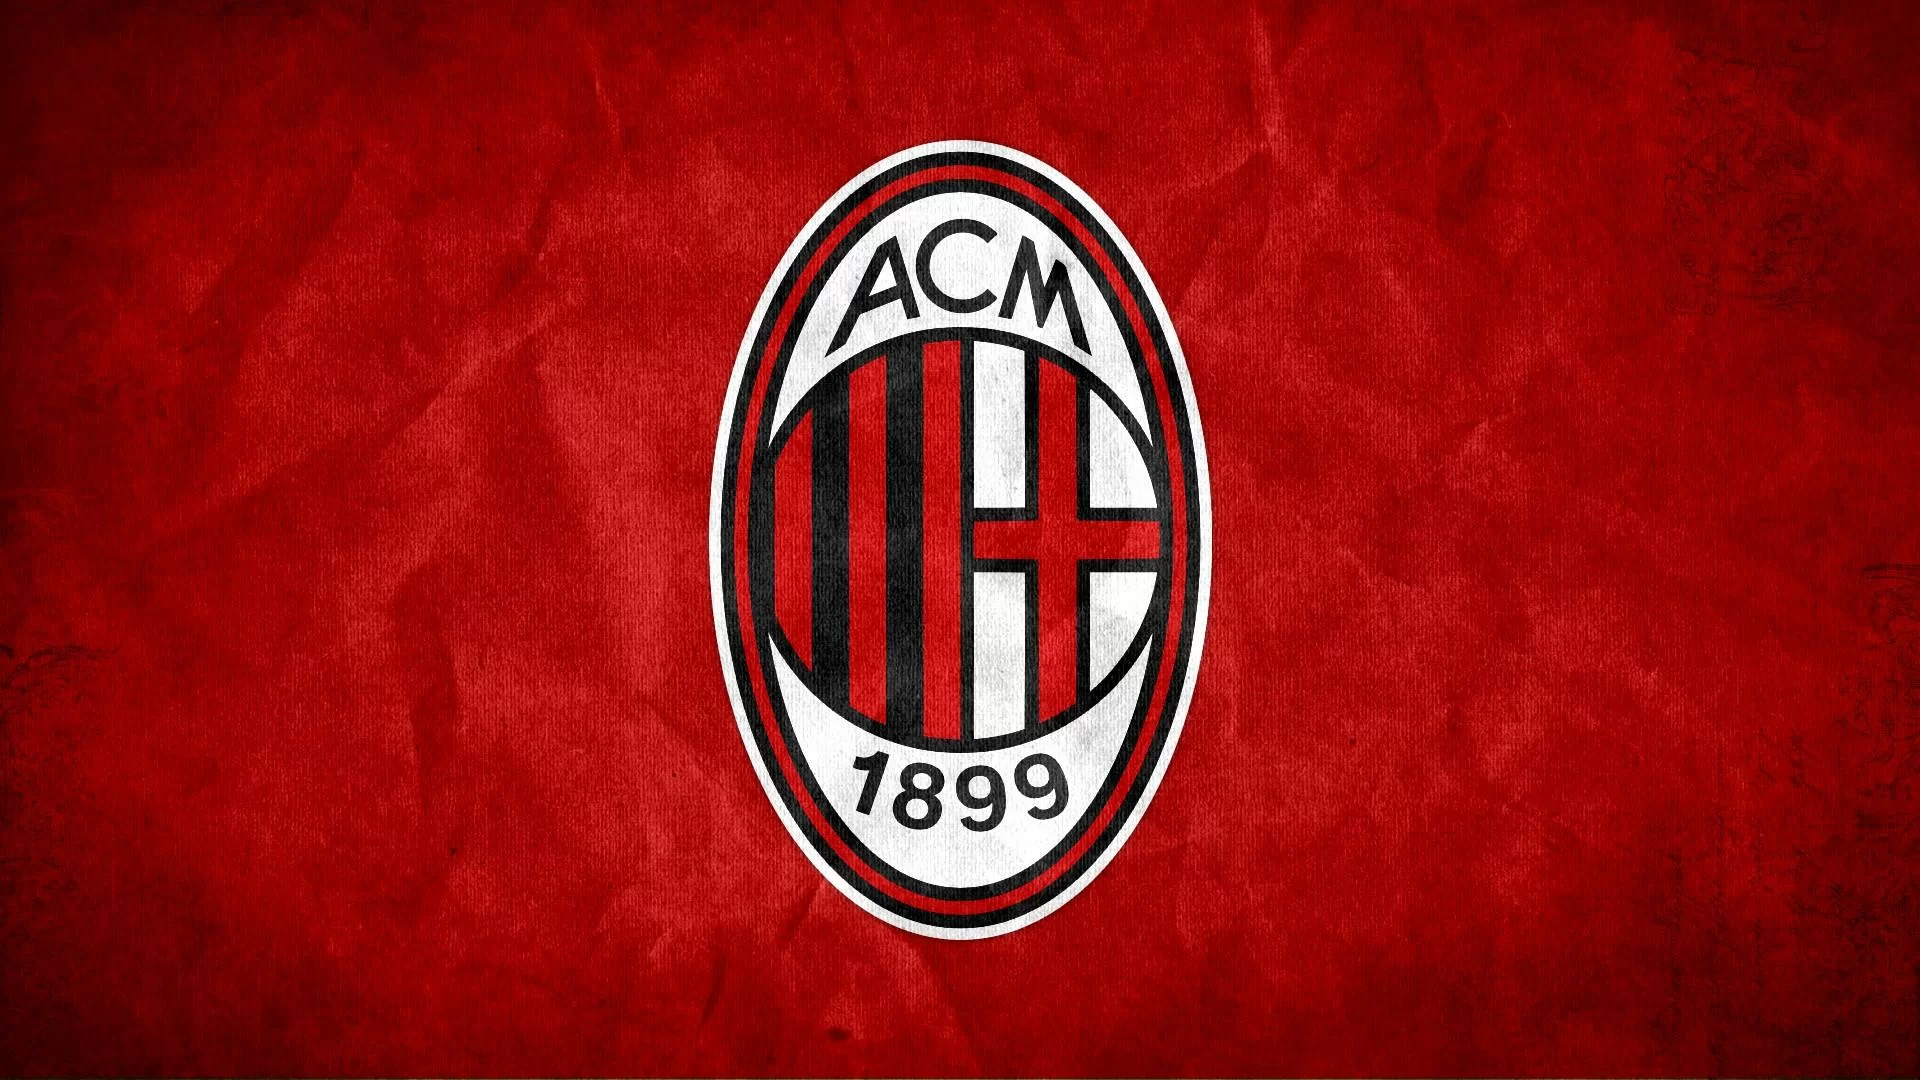 UFFICIALE • Uefa, comunicato Milan: “Ci aspettiamo equità, giudizi basati sui fatti, regole uguali per tutti”